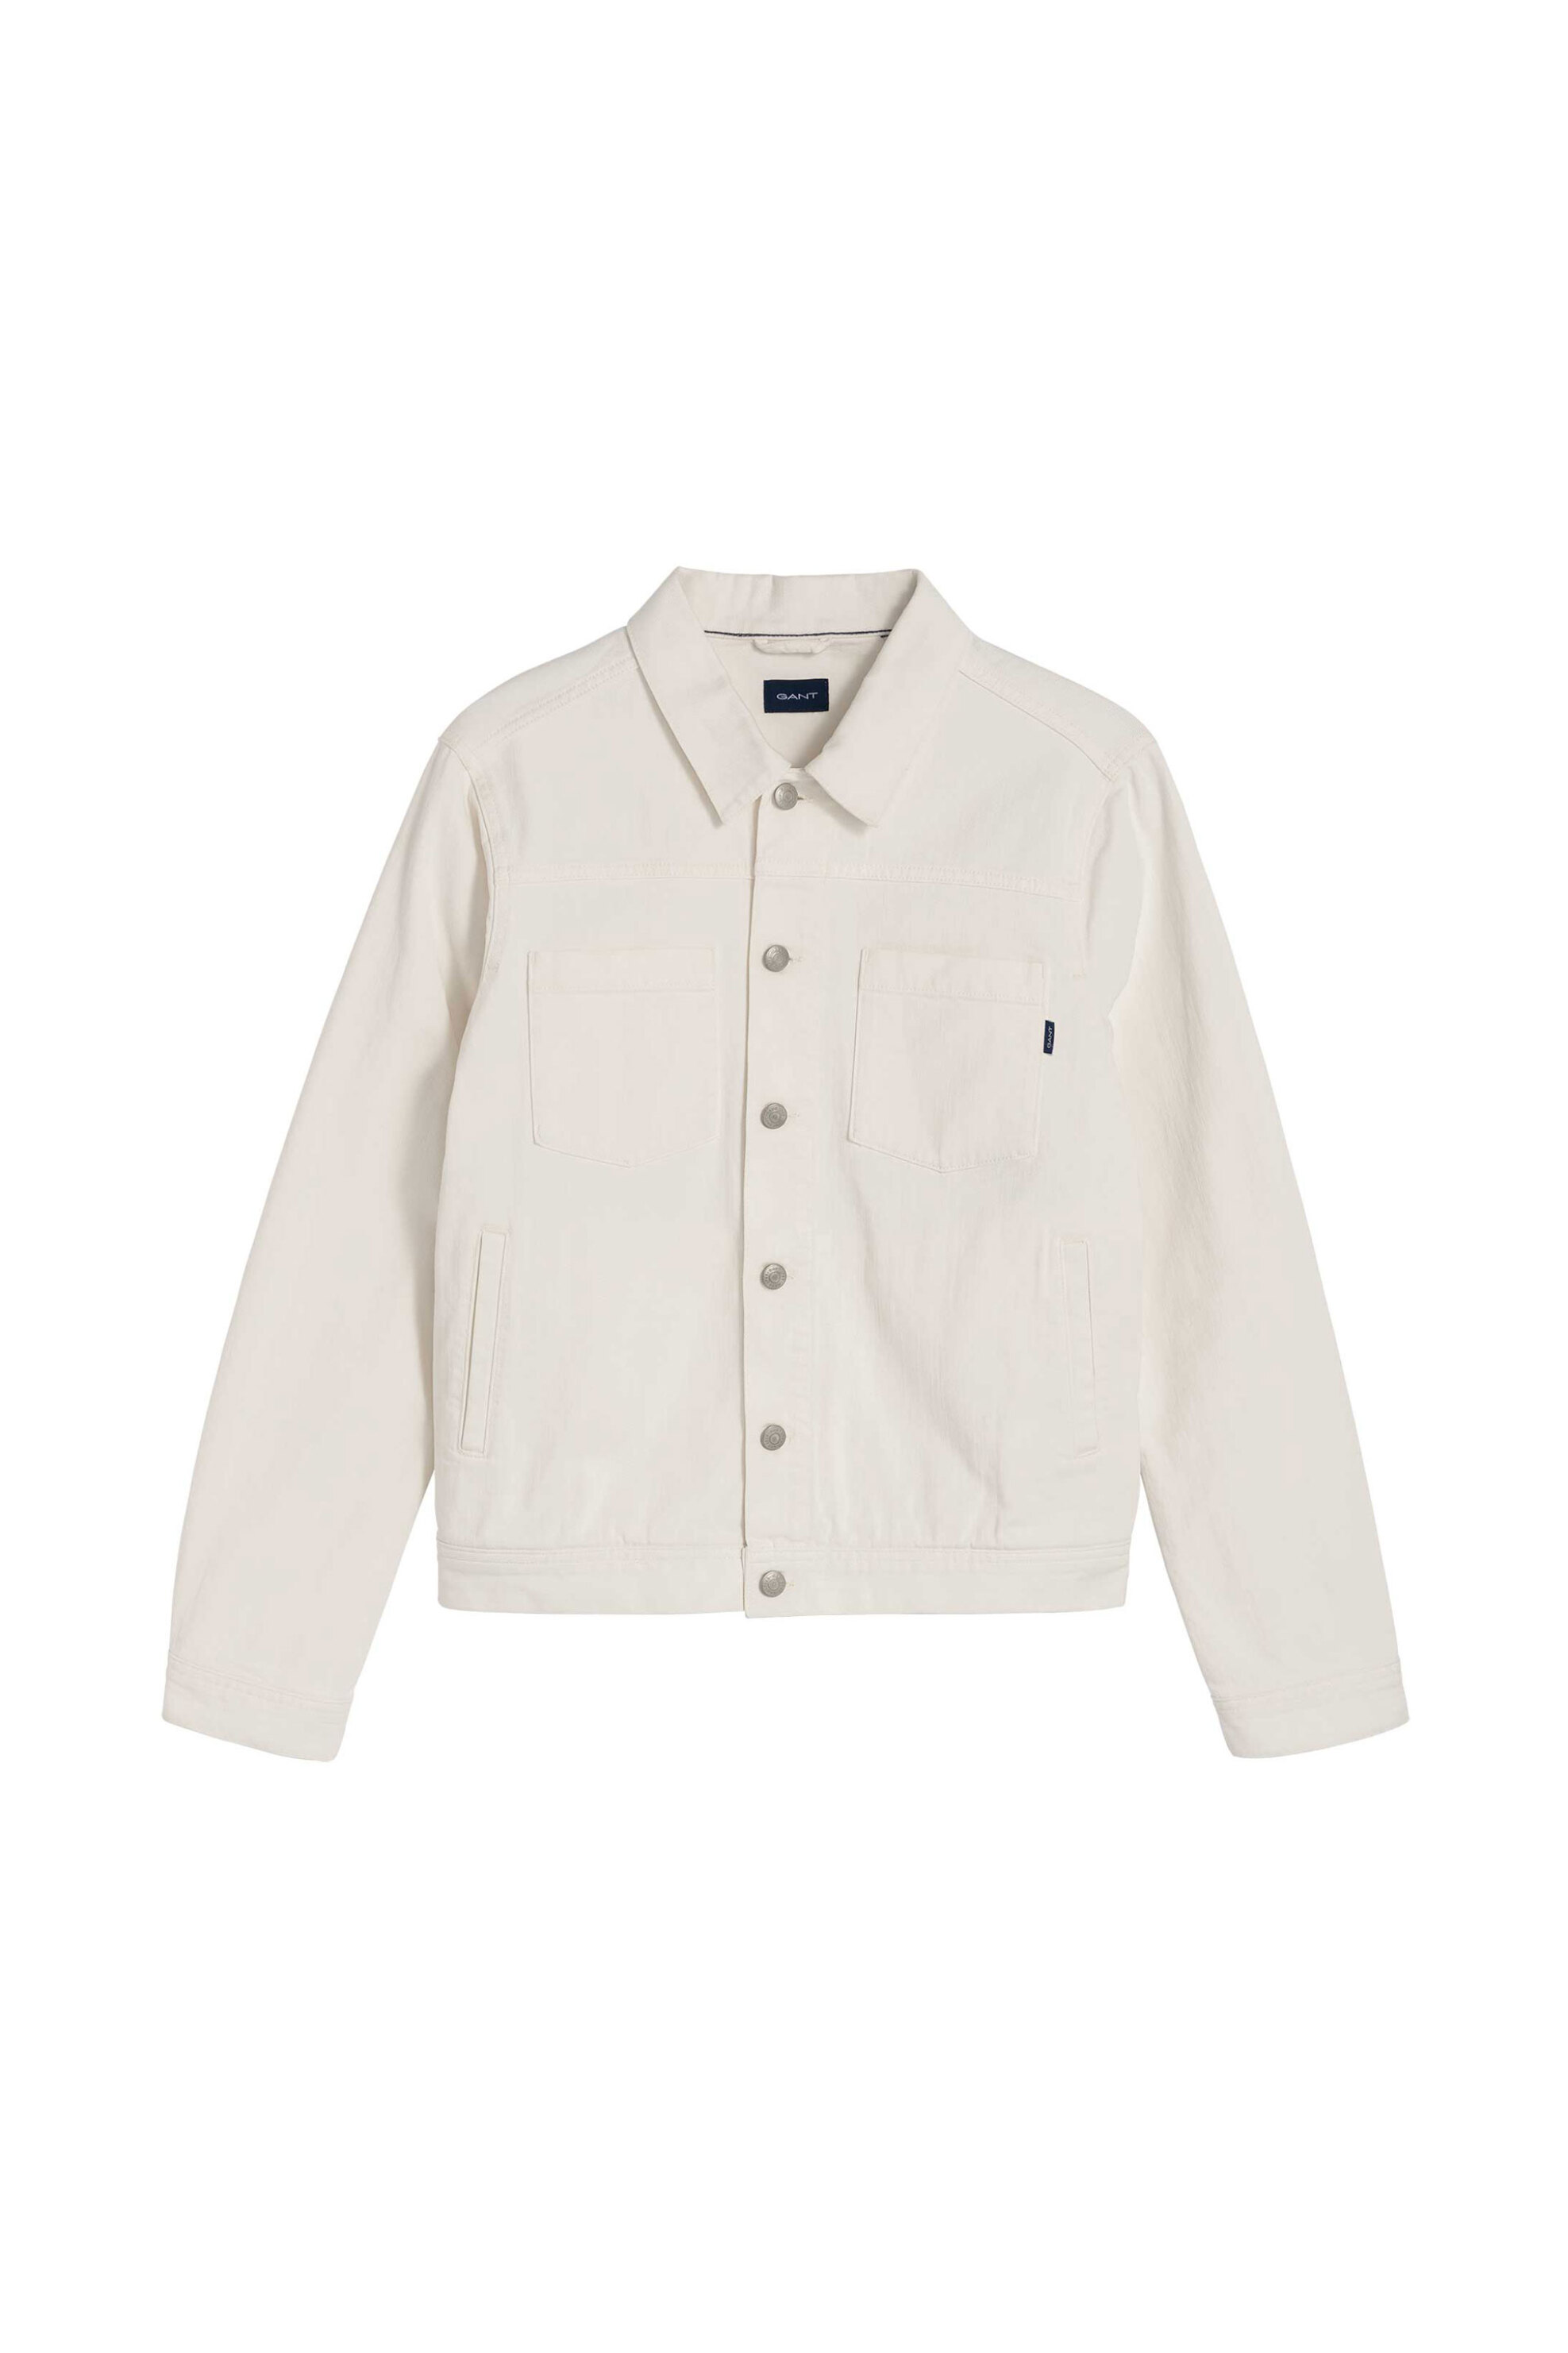 Ανδρική Μόδα > Ανδρικά Ρούχα > Ανδρικά Μπουφάν & Παλτό > Ανδρικά Τζιν Μπουφάν Gant ανδρικό denim jacket μονόχρωμο με τσέπες και logo label - 7003000 Κρέμ